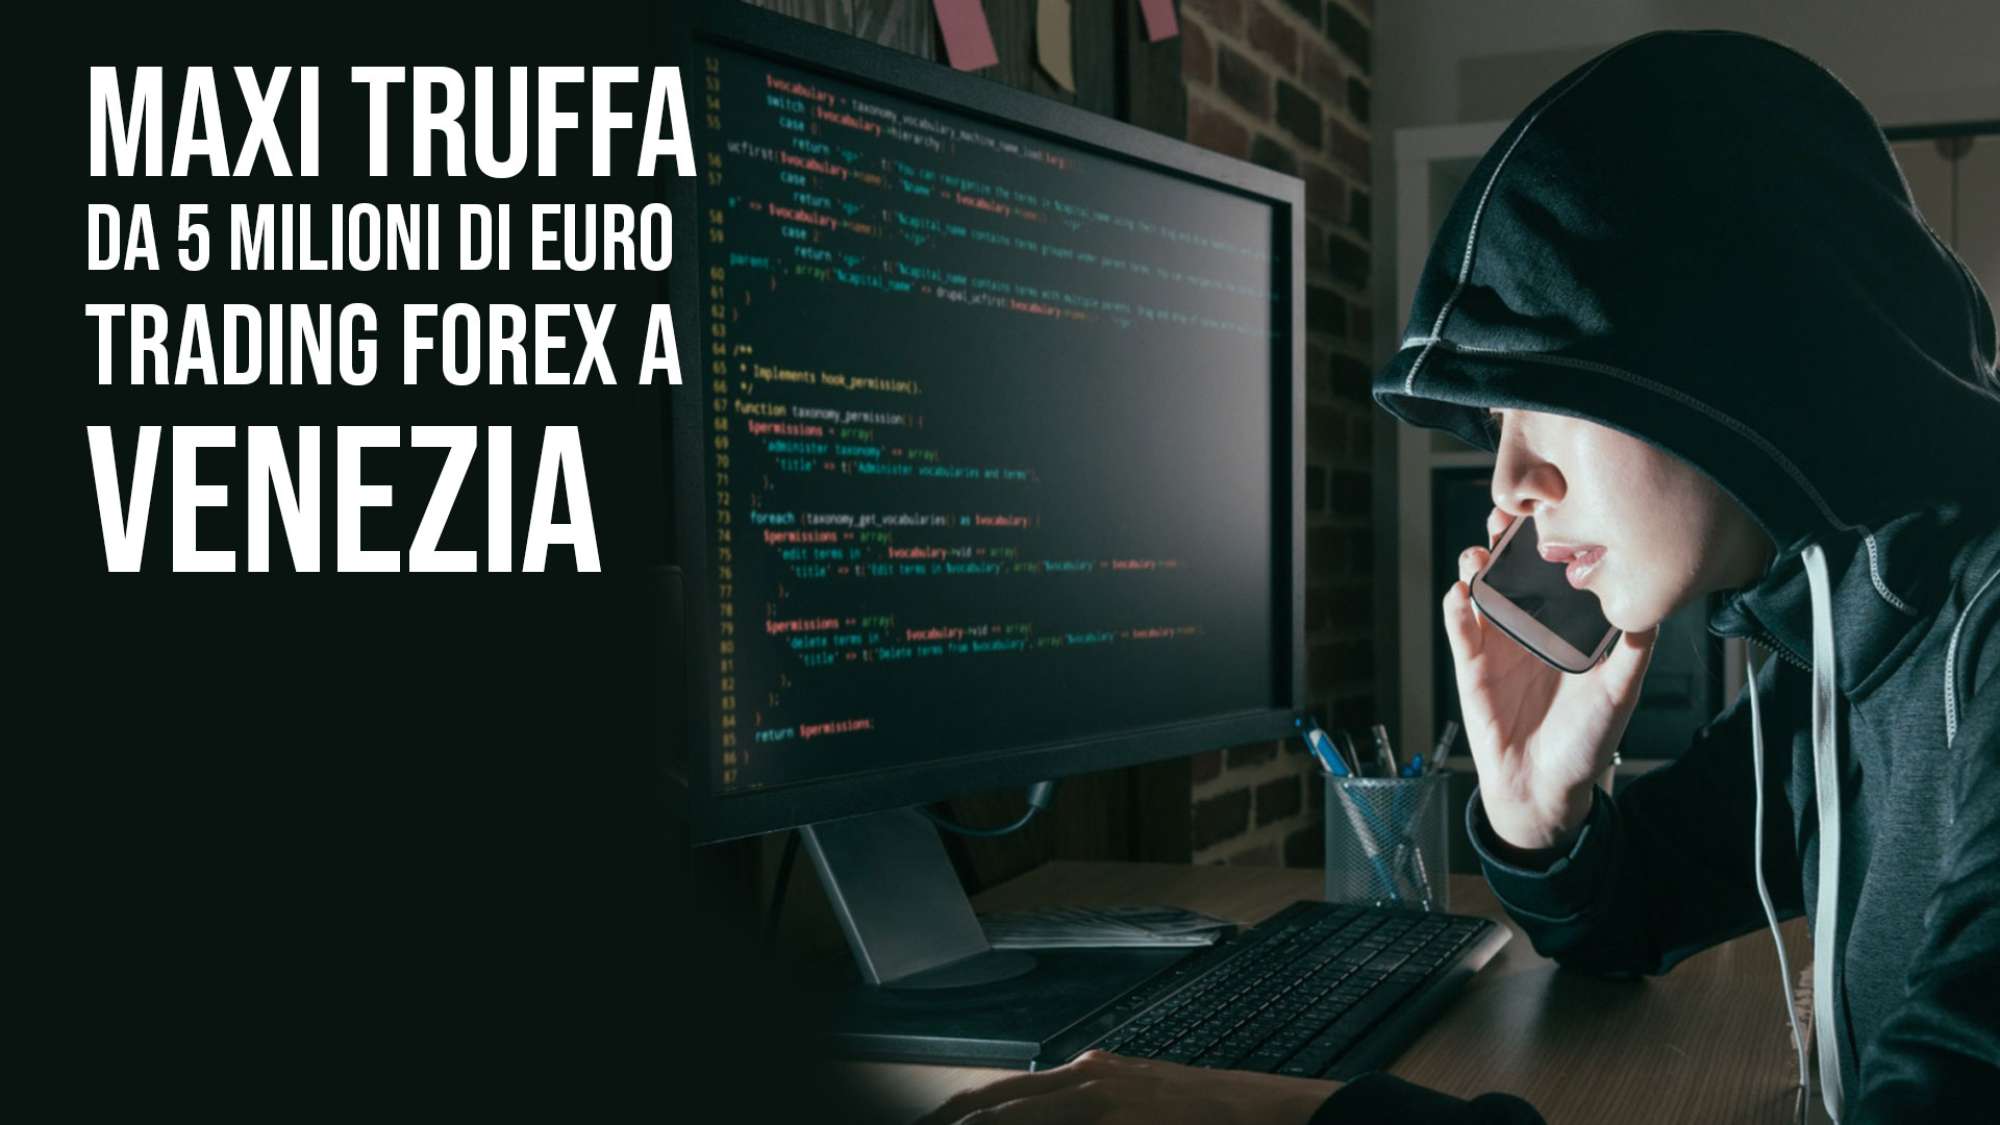 Trading online, maxi truffa da 5 milioni di euro: centinaia nella rete, 54 denunciati